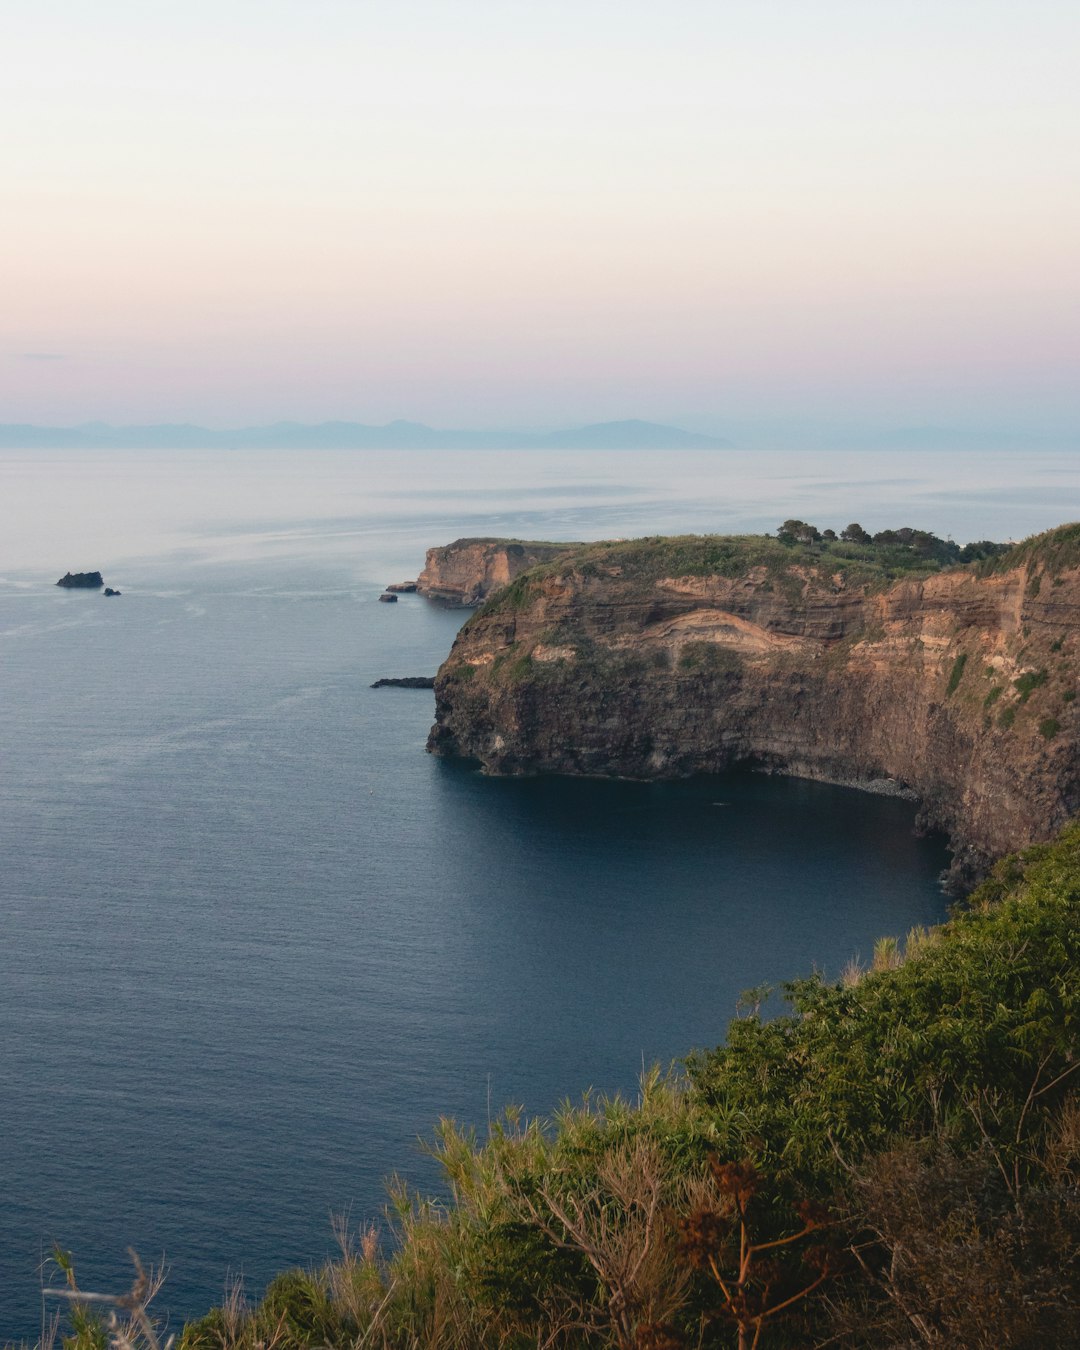 Cliff photo spot Ventotene Island Sperlonga